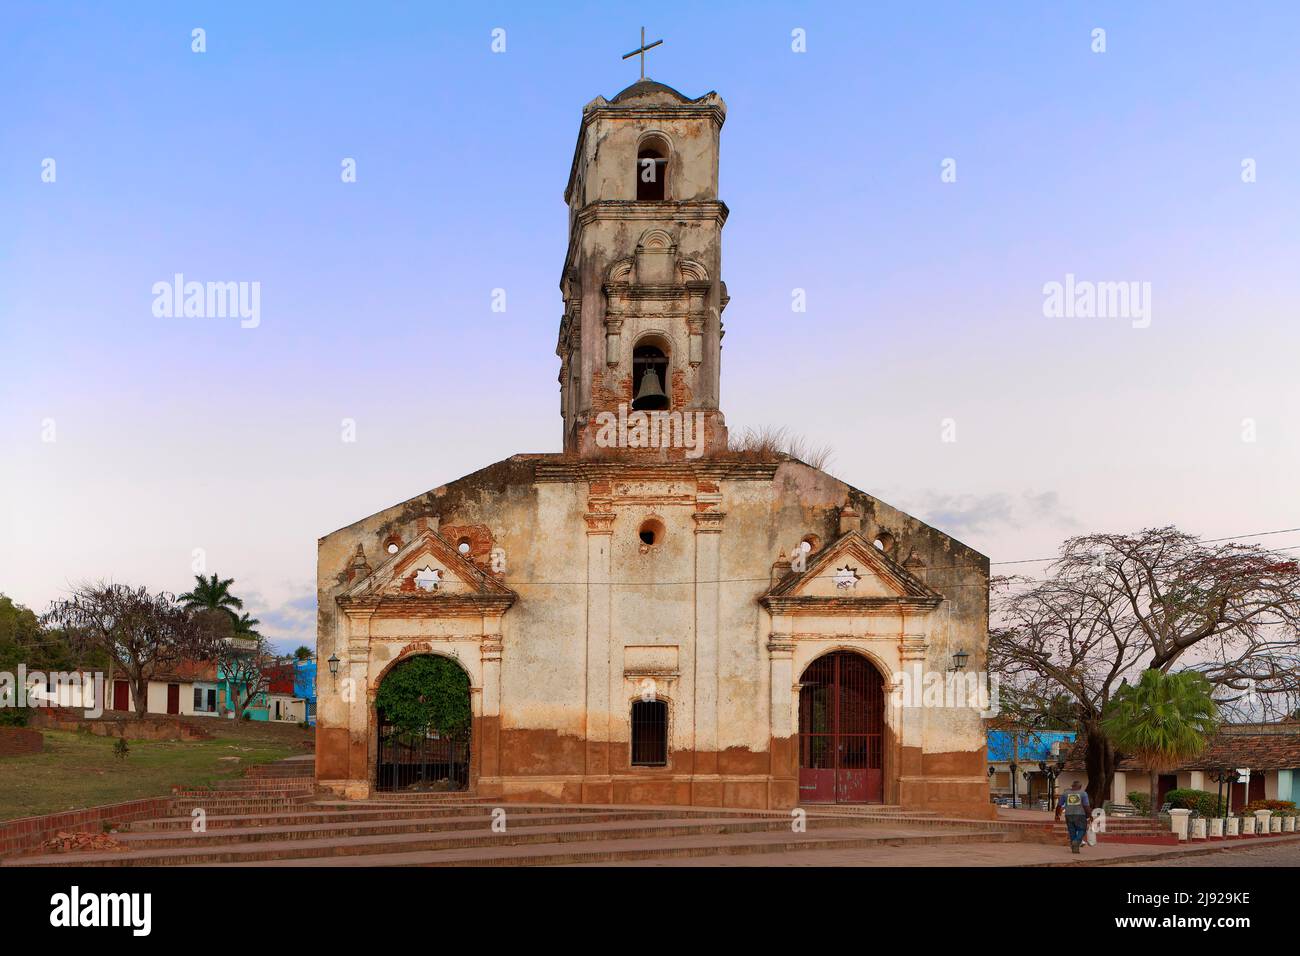 Morbosa, vecchia chiesa con campanile, città vecchia, Trinidad, patrimonio dell'umanità dell'UNESCO, provincia Sancti Spiritus, Cuba, Indie Occidentali, Caraibi Foto Stock